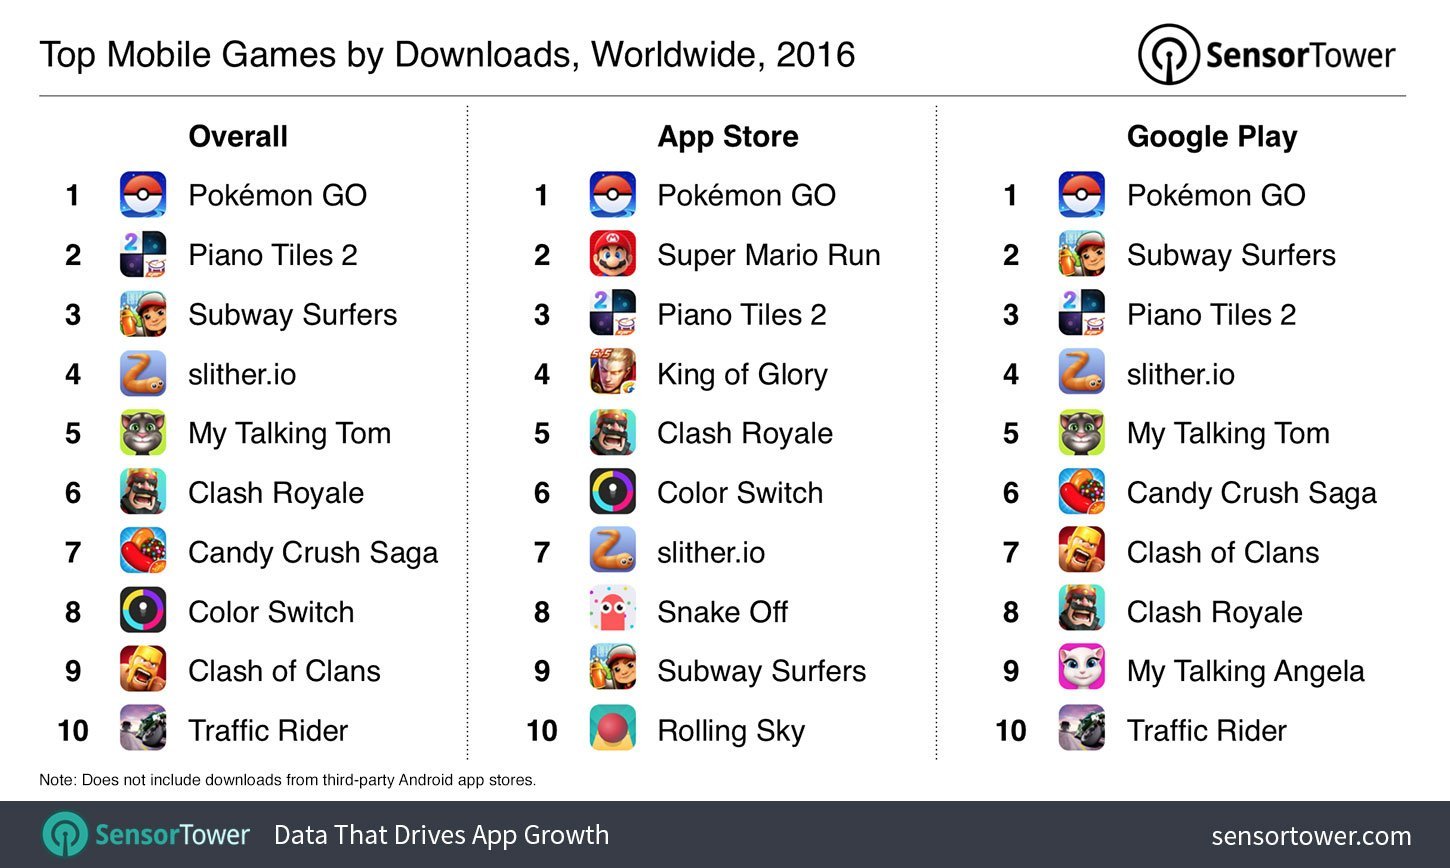 Pokémon GO torna-se o maior jogo mobile na história dos Estados Unidos -  MacMagazine